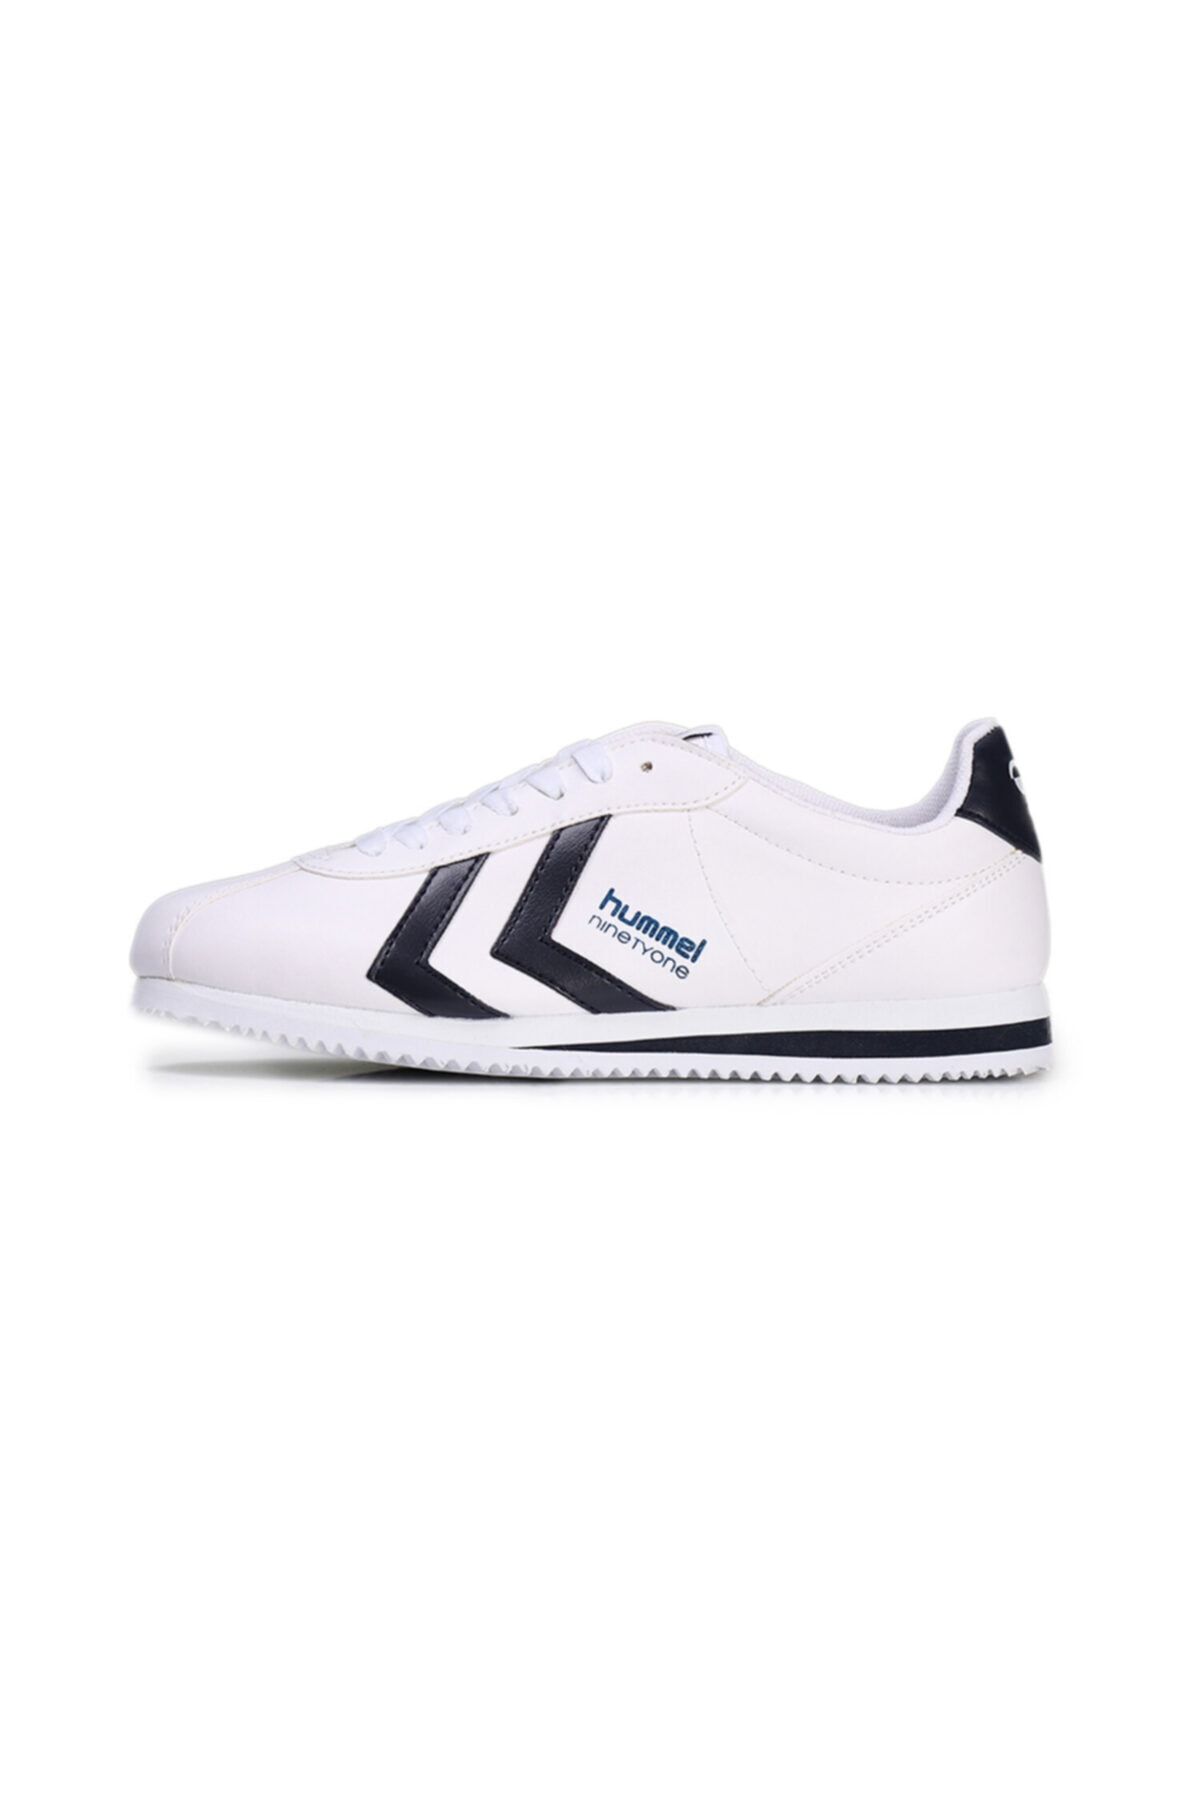 hummel Ninetyone Lifestyle Shoe Beyaz Kadın Sneaker Ayakkabı 100433224